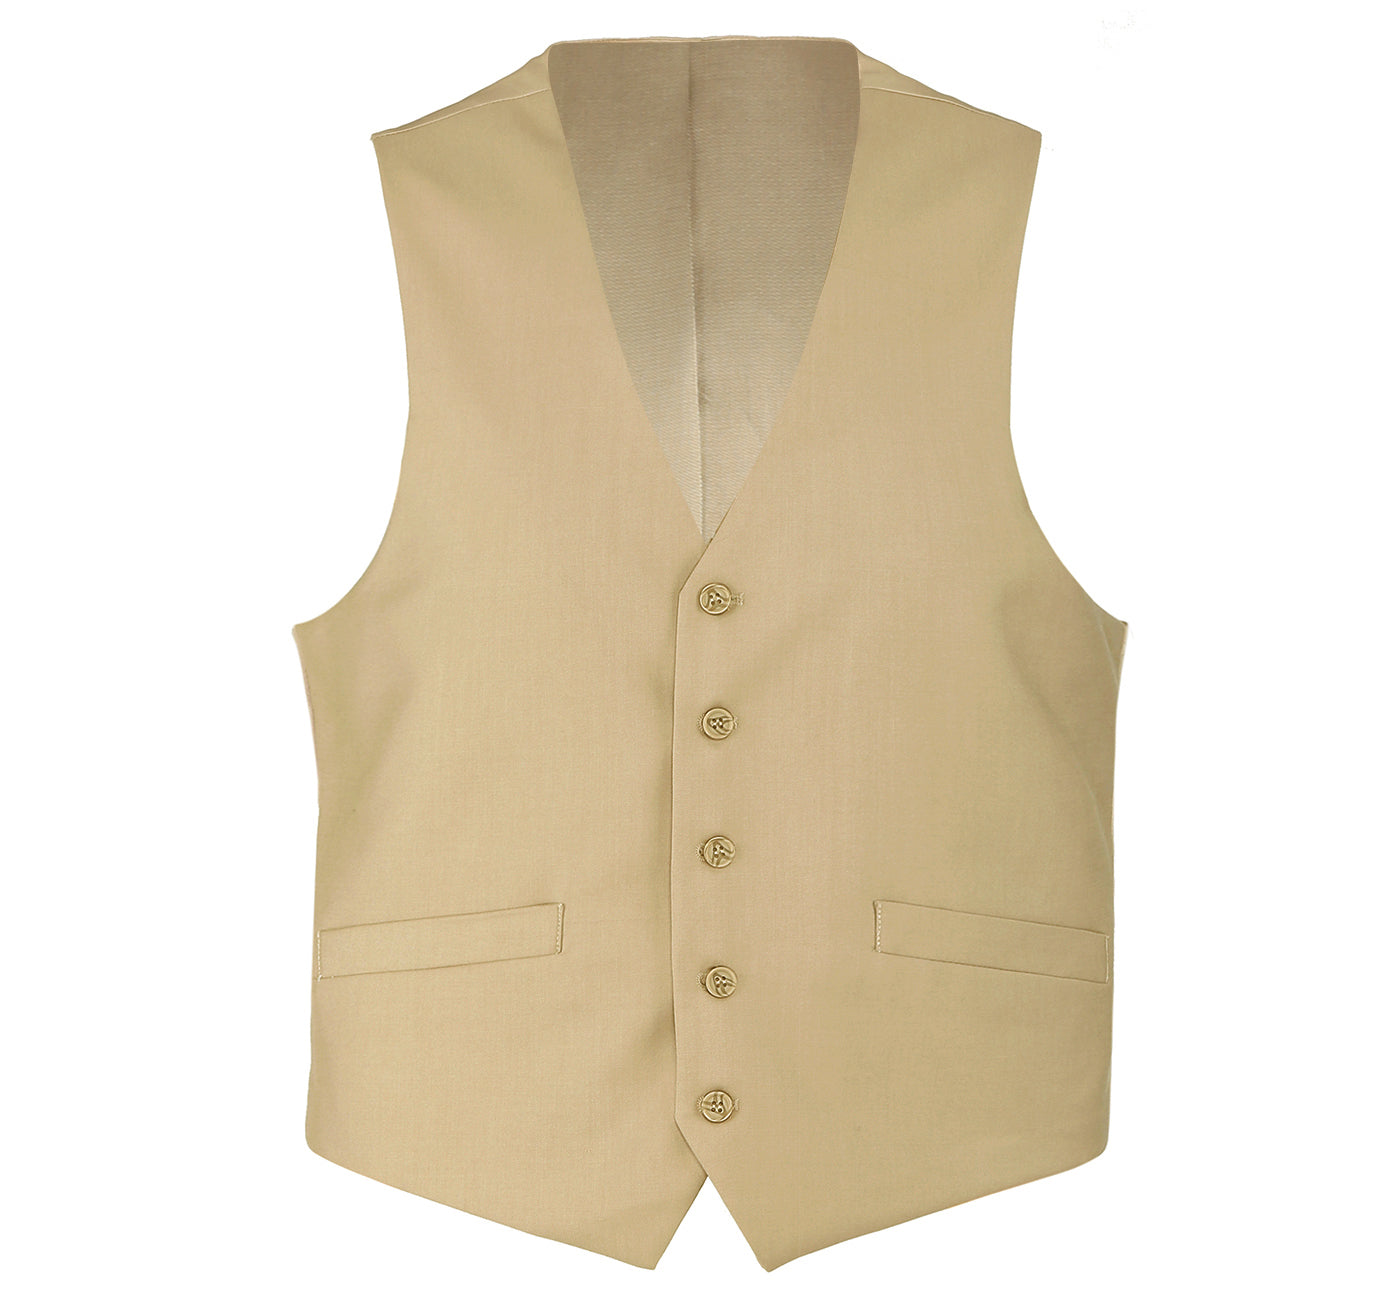 508-4 Men's Classic Fit Tan Suit Separate Wool Vest